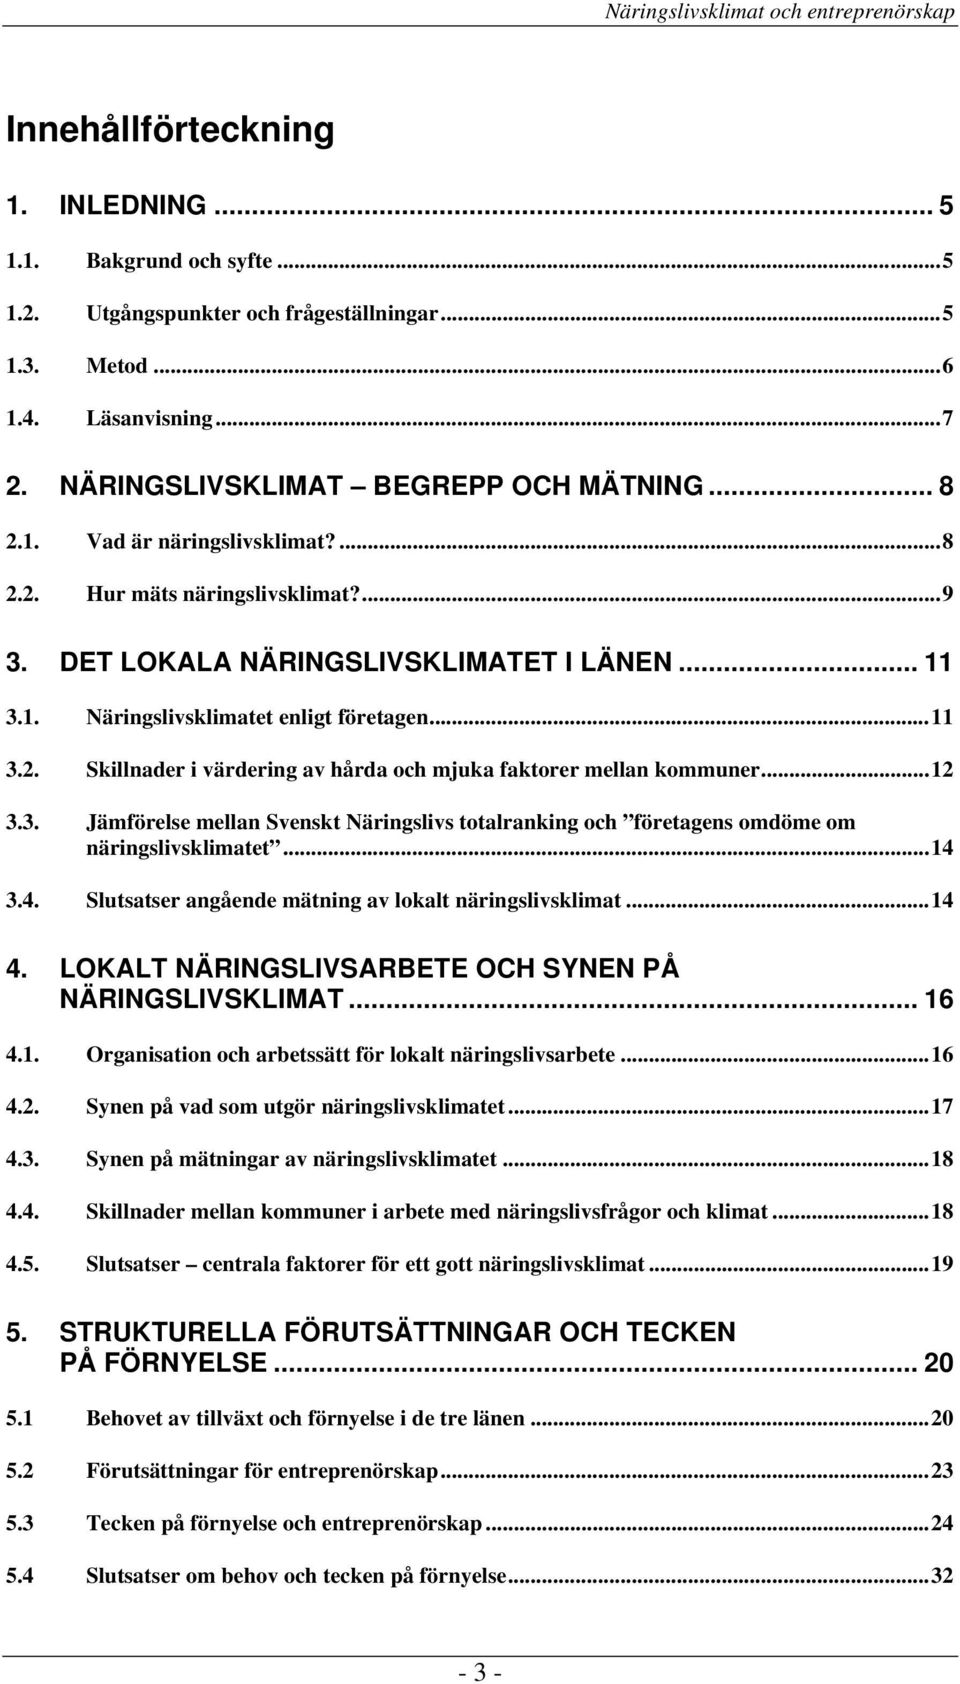 ..12 3.3. Jämförelse mellan Svenskt Näringslivs totalranking och företagens omdöme om näringslivsklimatet...14 3.4. Slutsatser angående mätning av lokalt näringslivsklimat...14 4.